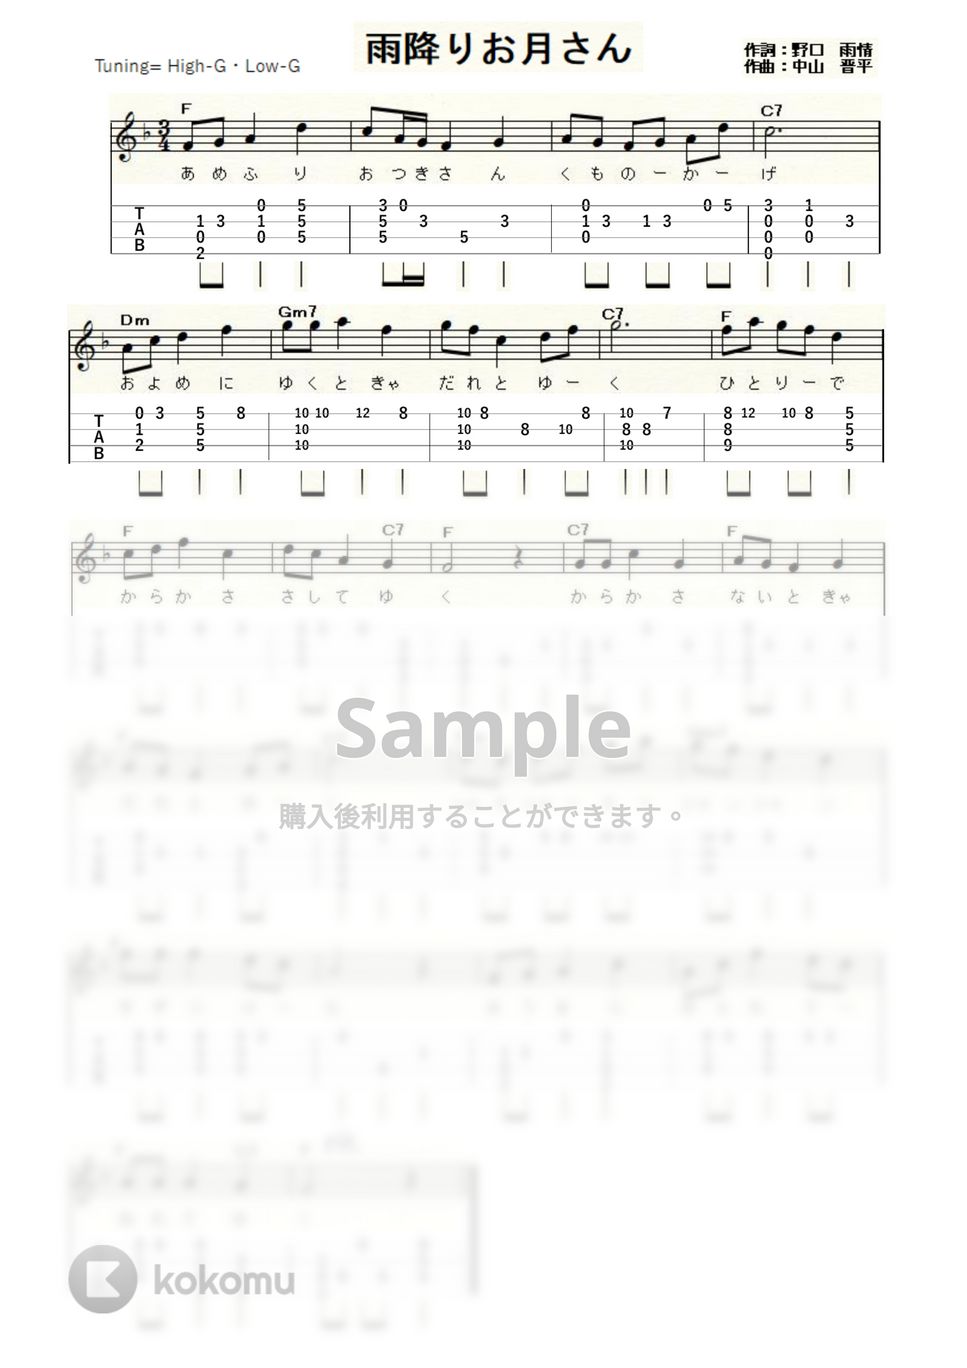 雨降りお月さん (ｳｸﾚﾚｿﾛ / High-G,Low-G / 初級) by ukulelepapa